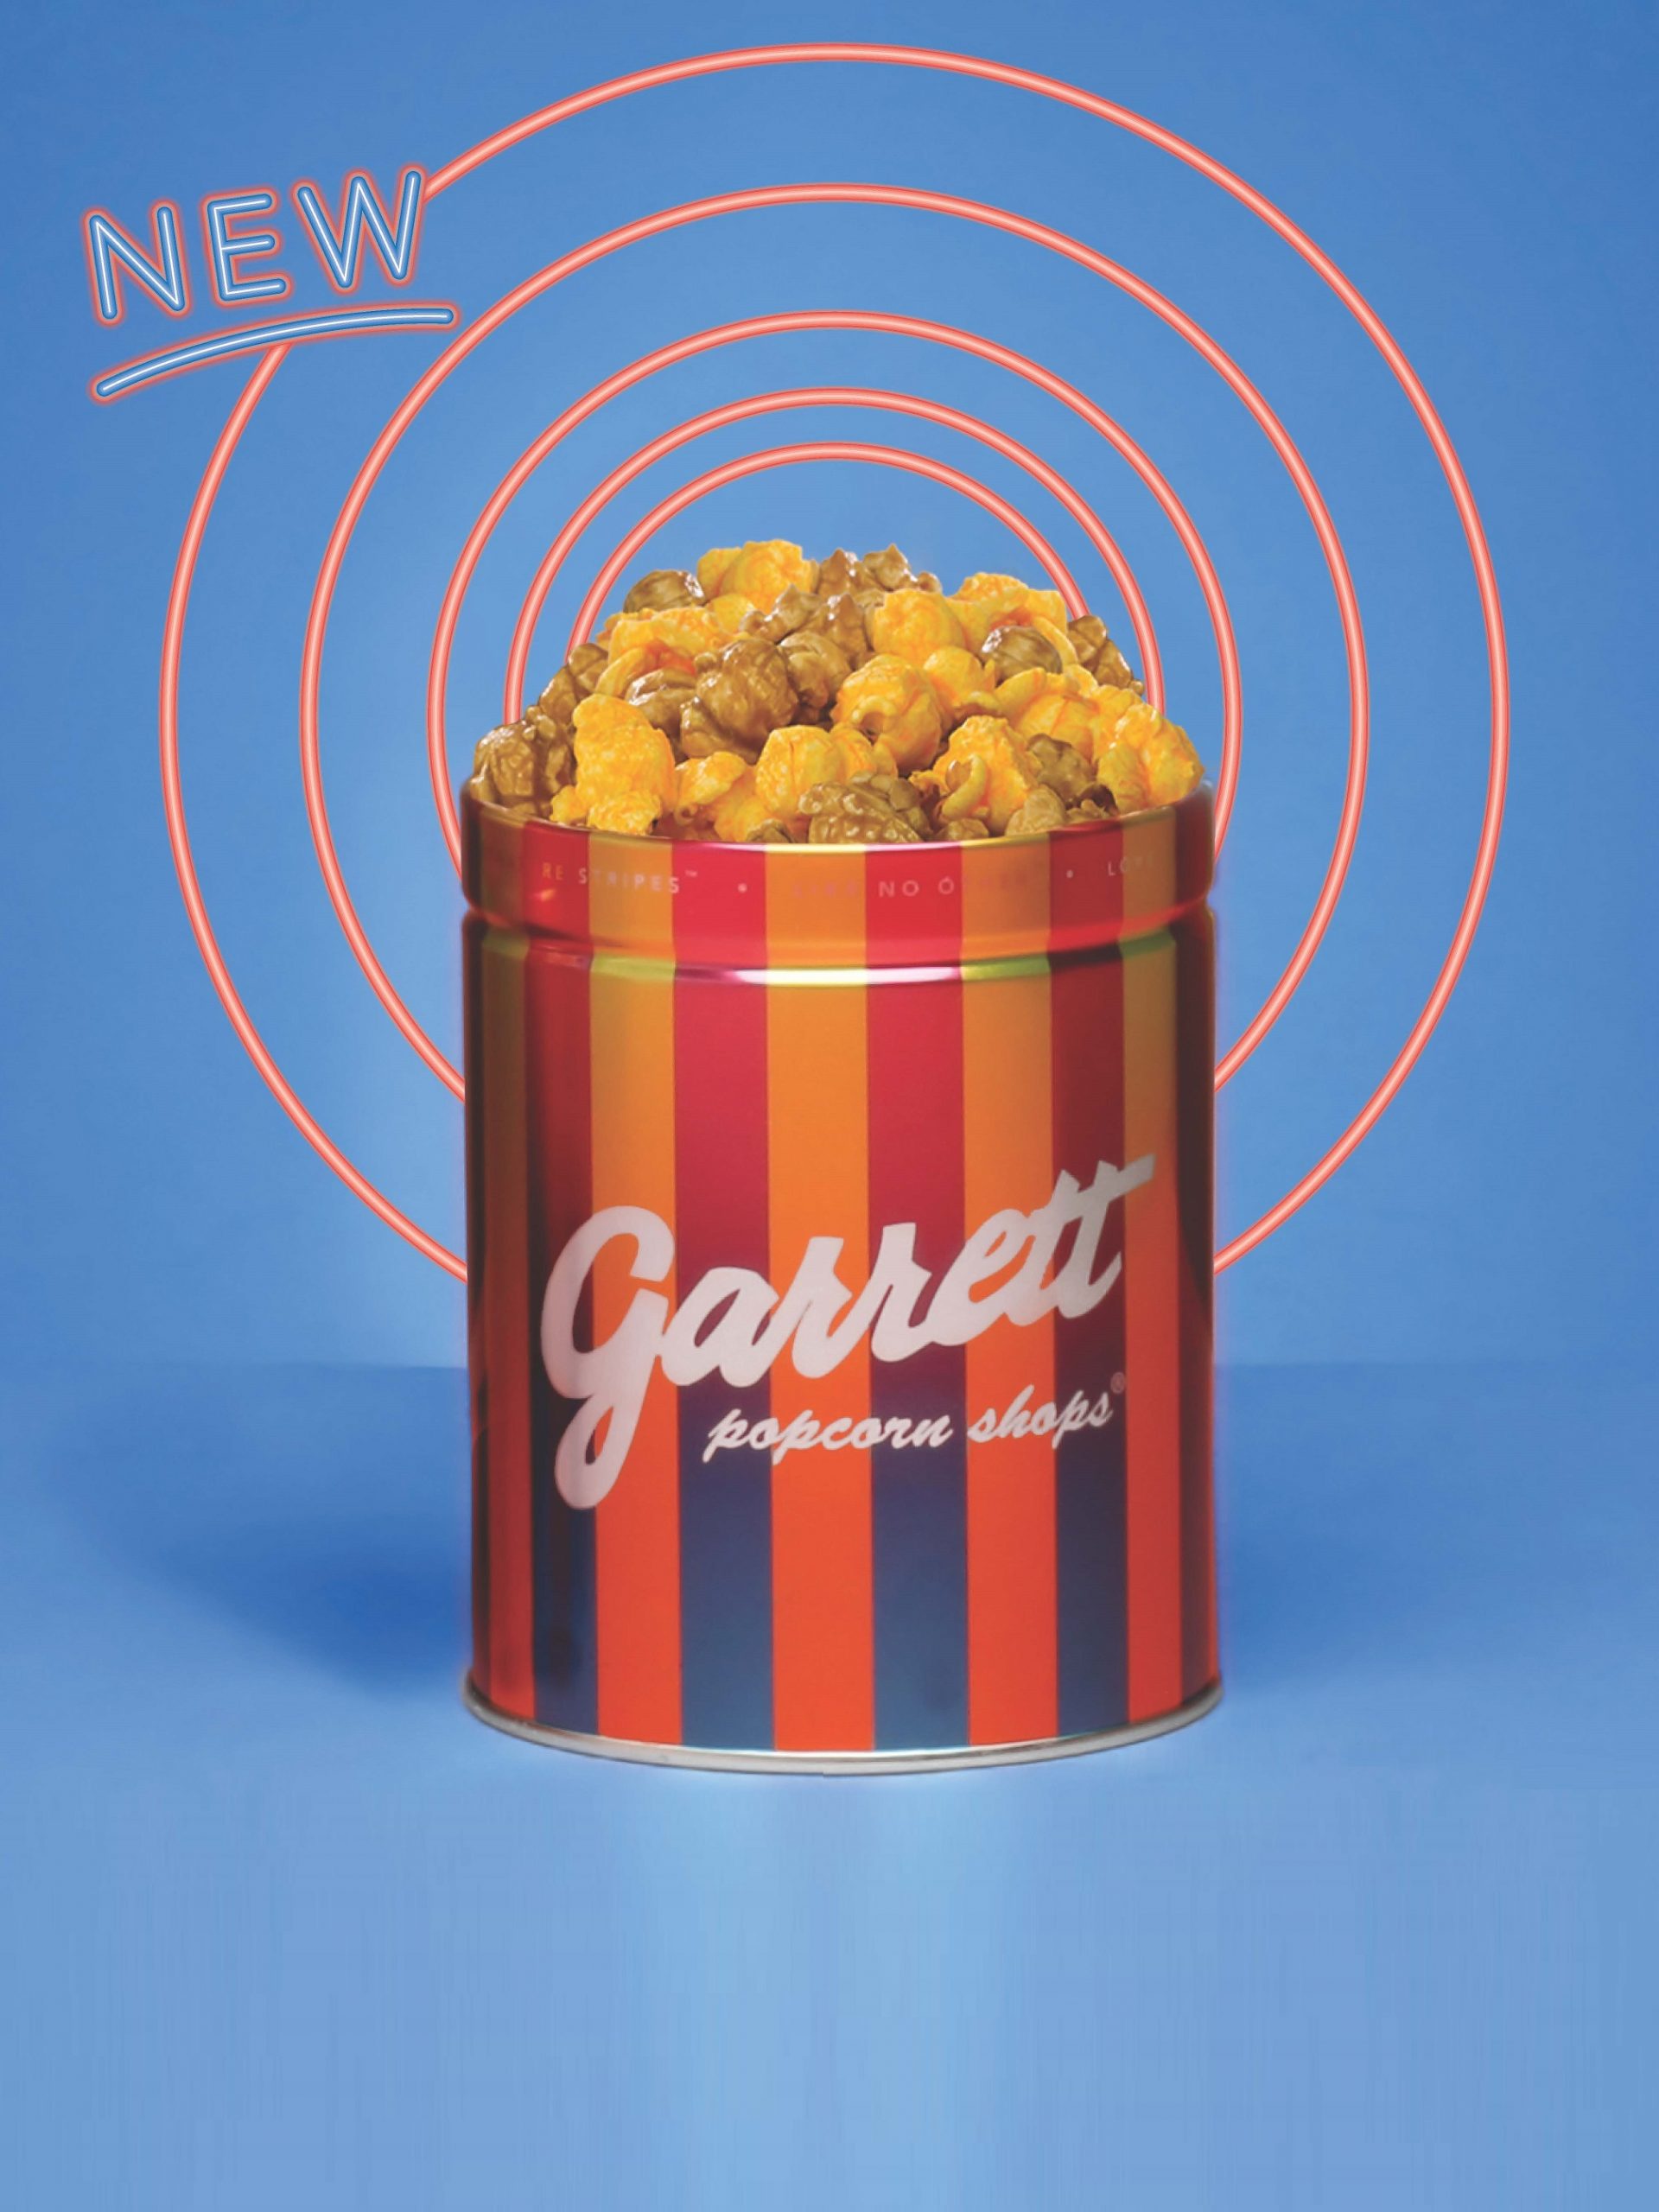 Garrett Mix Popcorn - Petite Tins